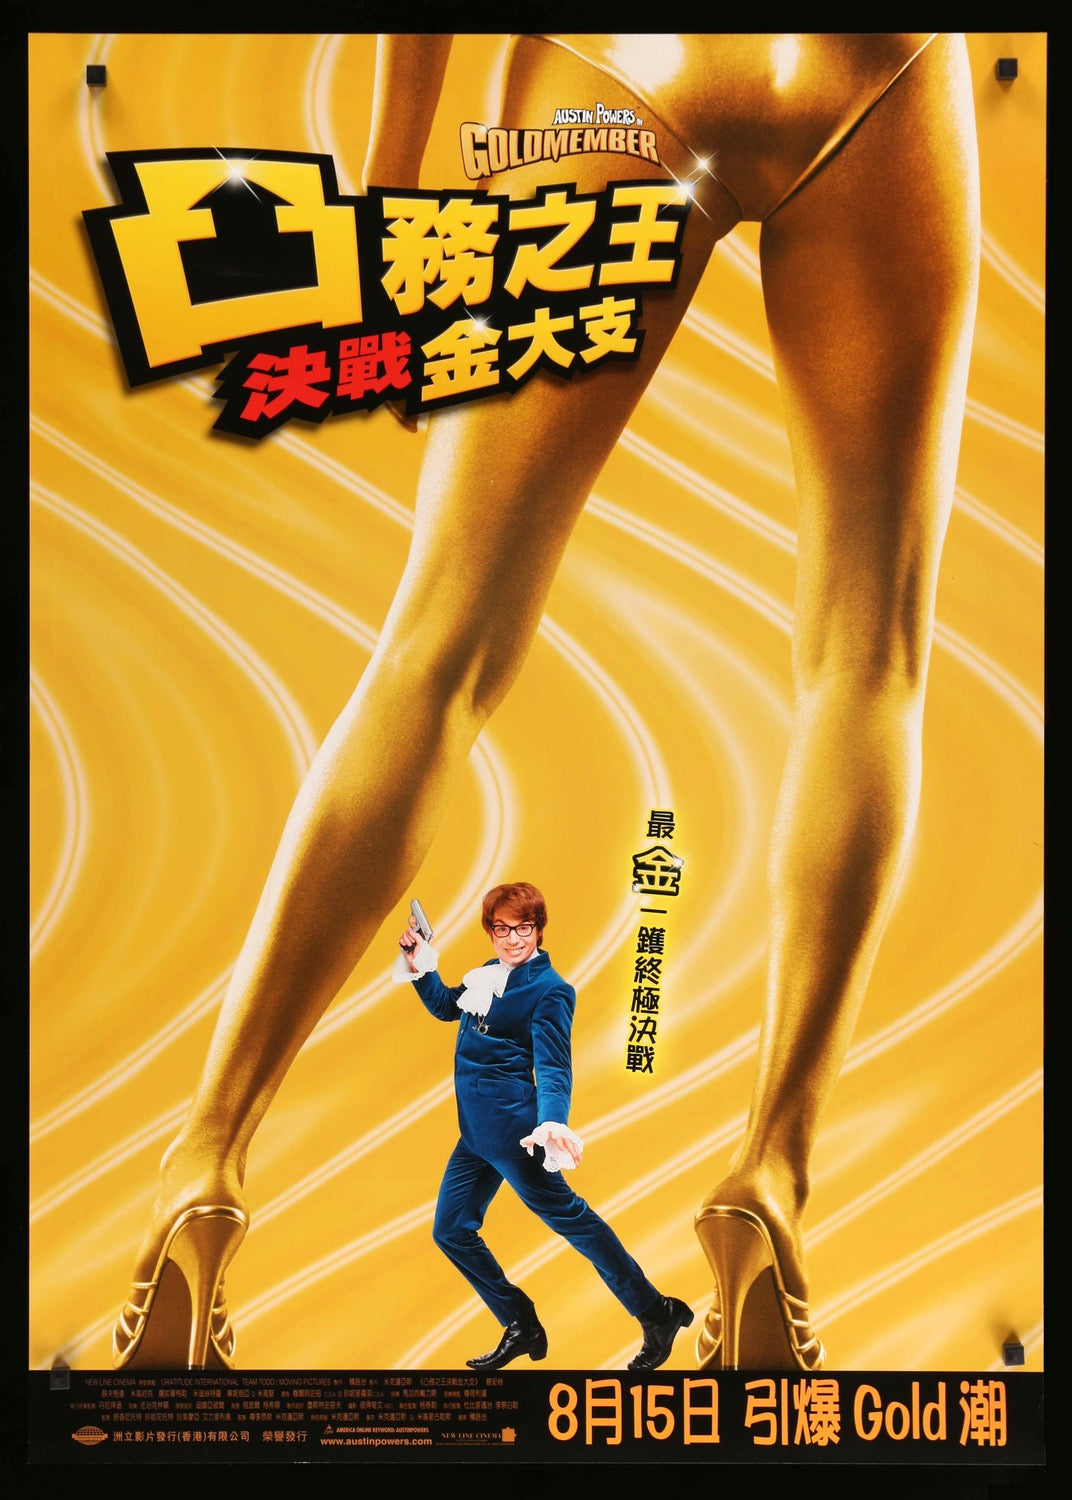 Austin Powers in Goldmember (2002) original movie poster for sale at Original Film Art